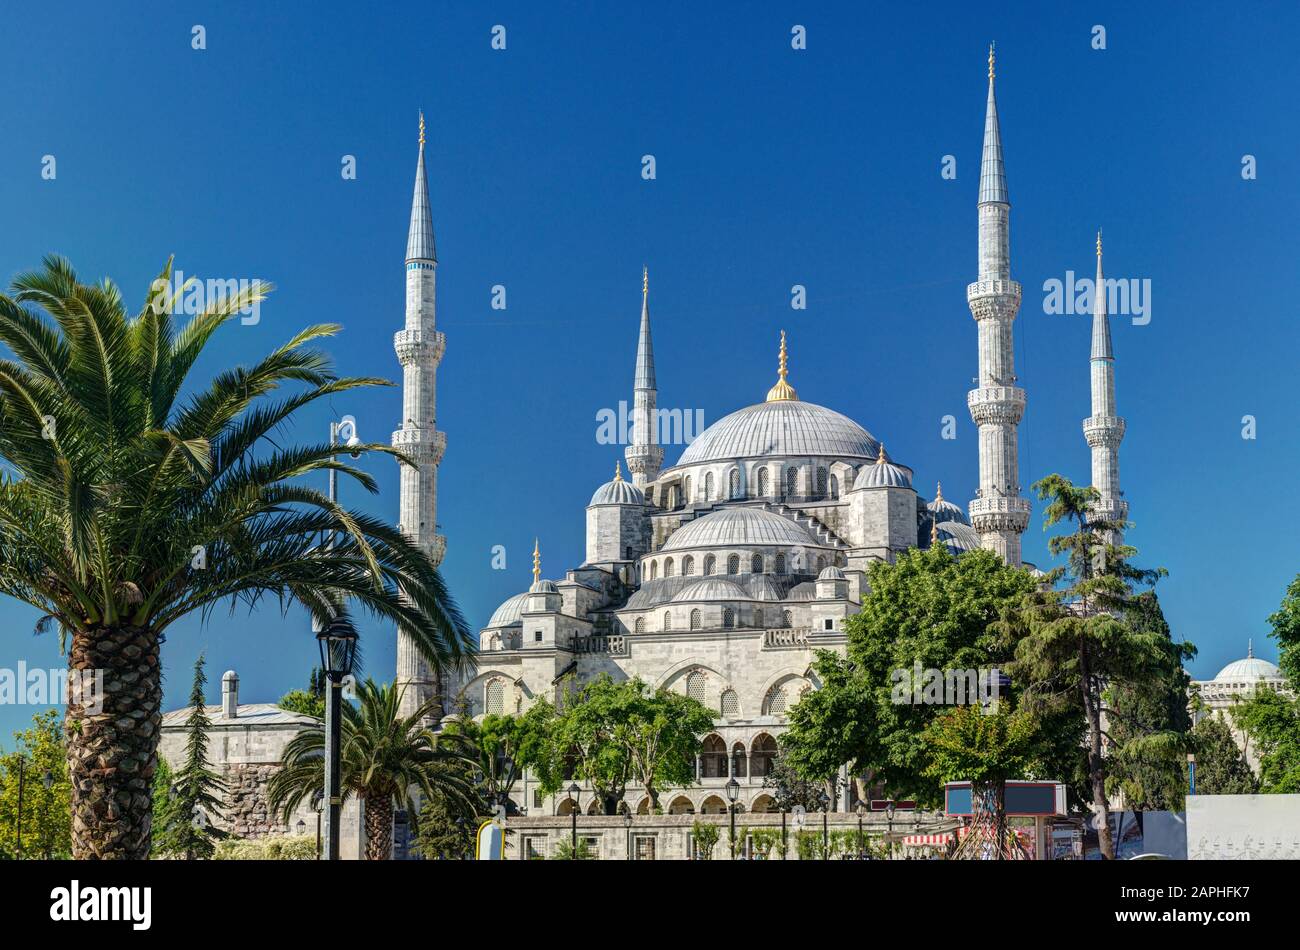 Vista de la Mezquita Azul en Estambul, Turquía. La Mezquita Azul (Sultanahmet Camii) es un monumento histórico y una hermosa mezquita en Estambul. Foto de stock